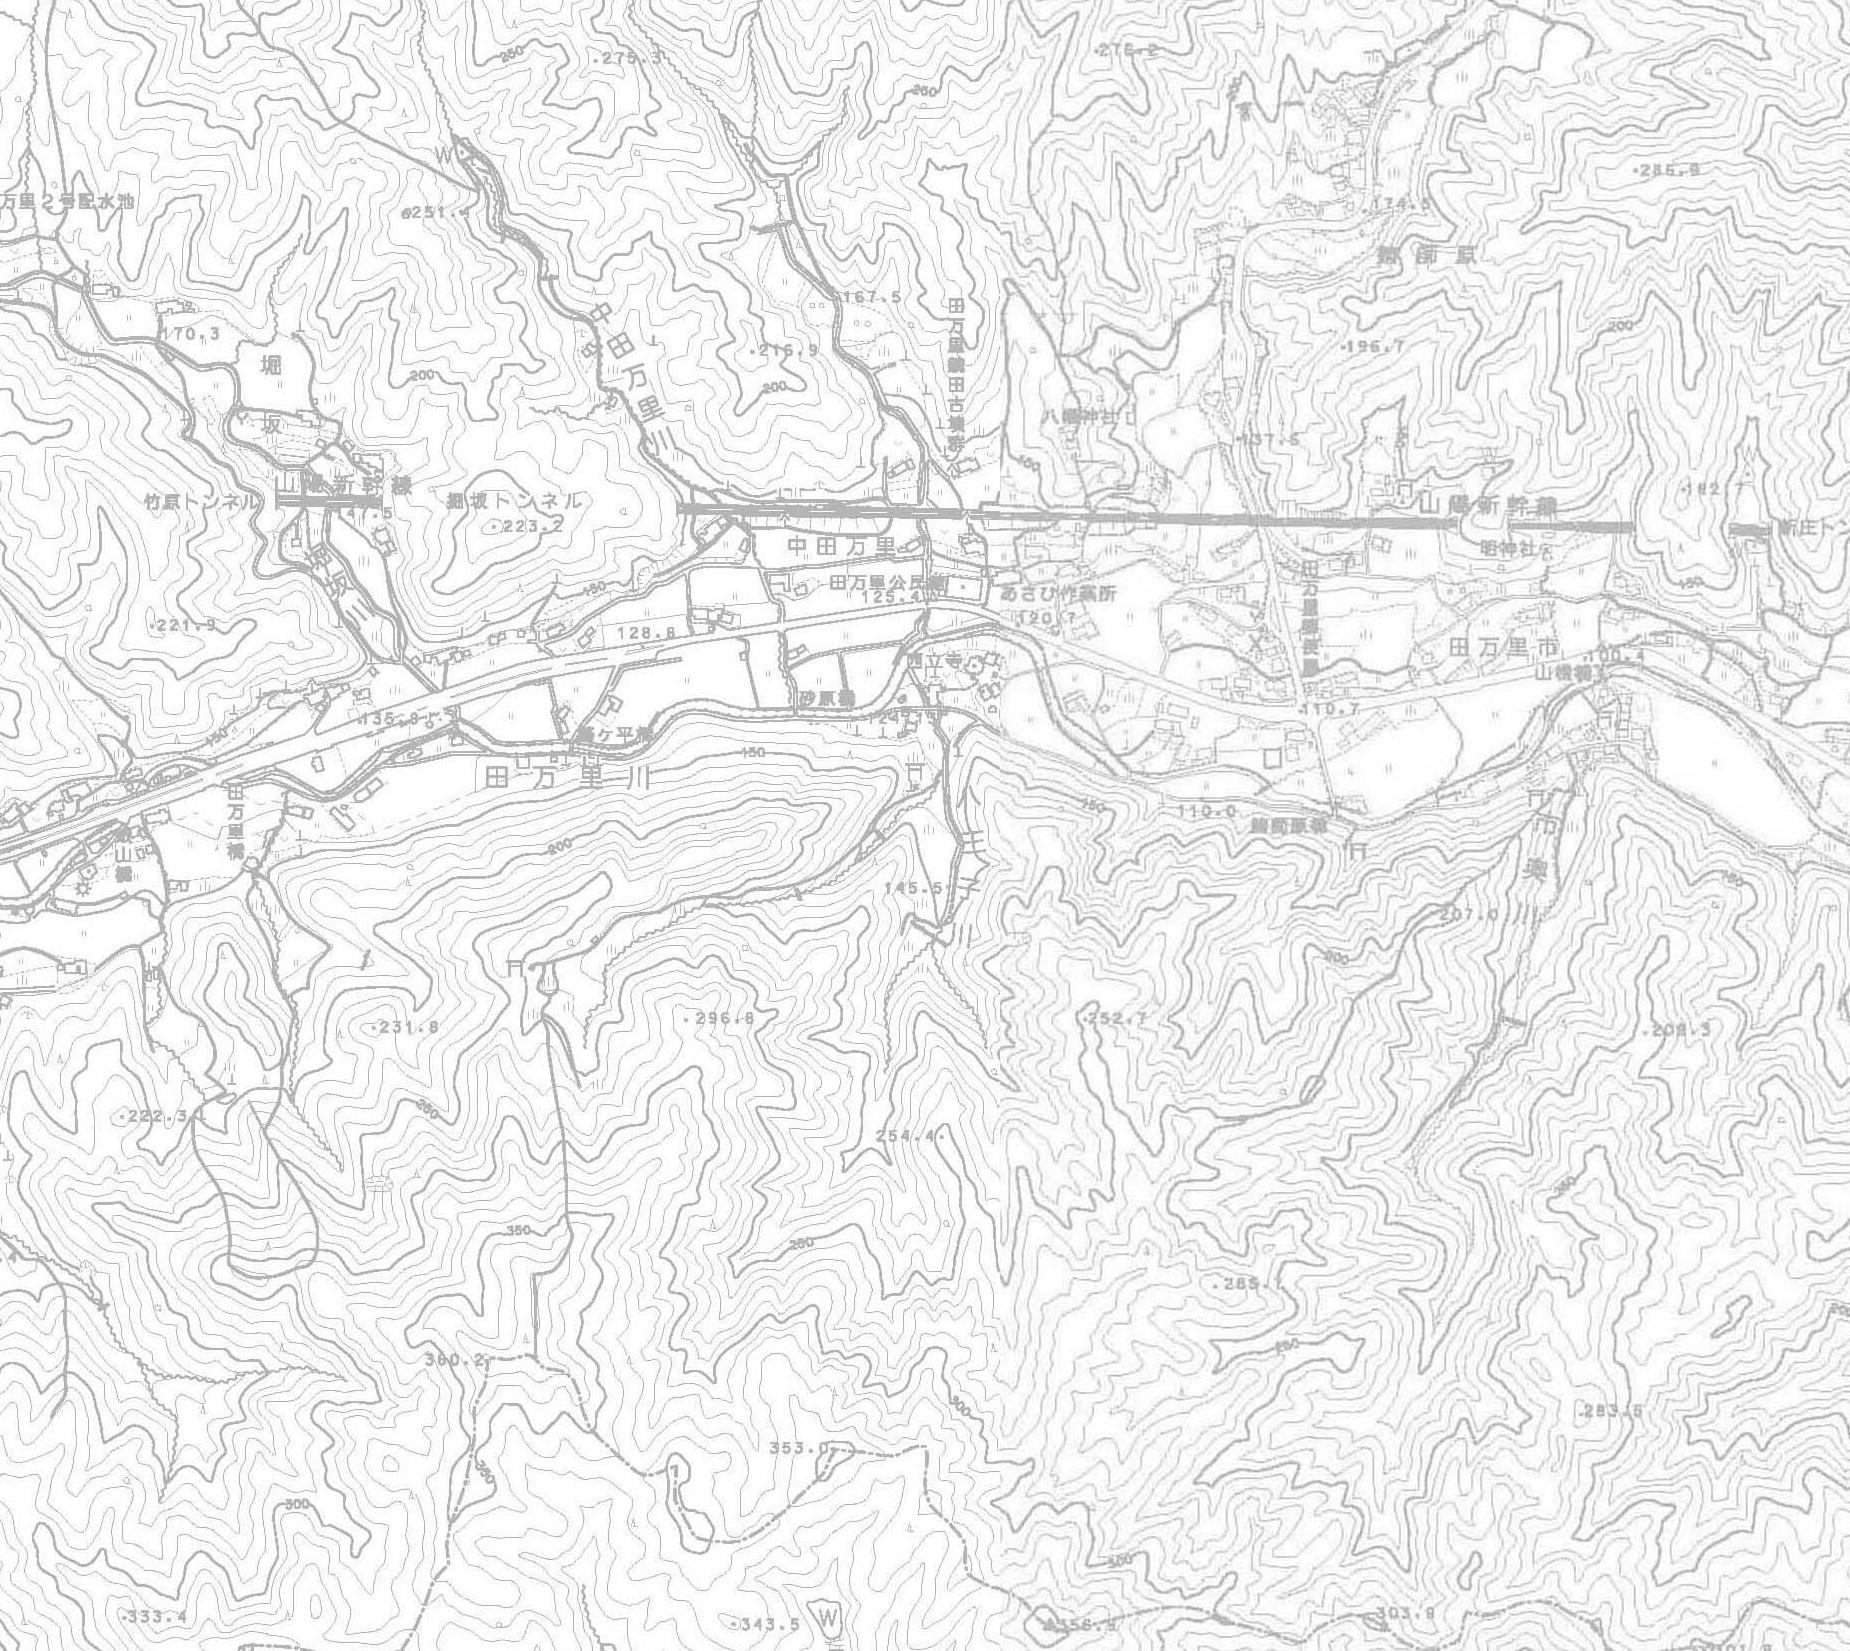 都市計画図c02の地図画像